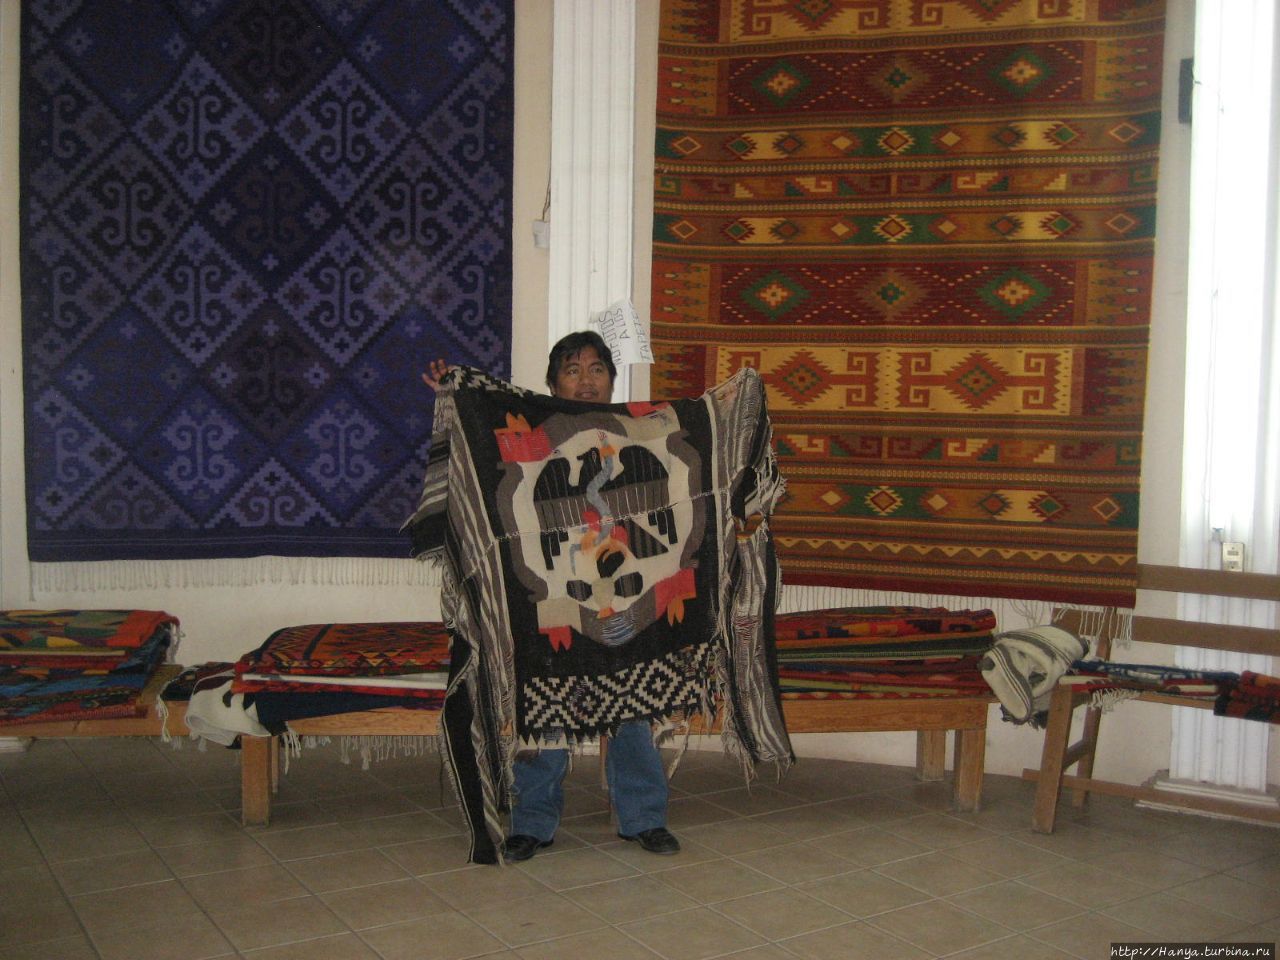 Мастерская по производству ковров Оахака, Мексика